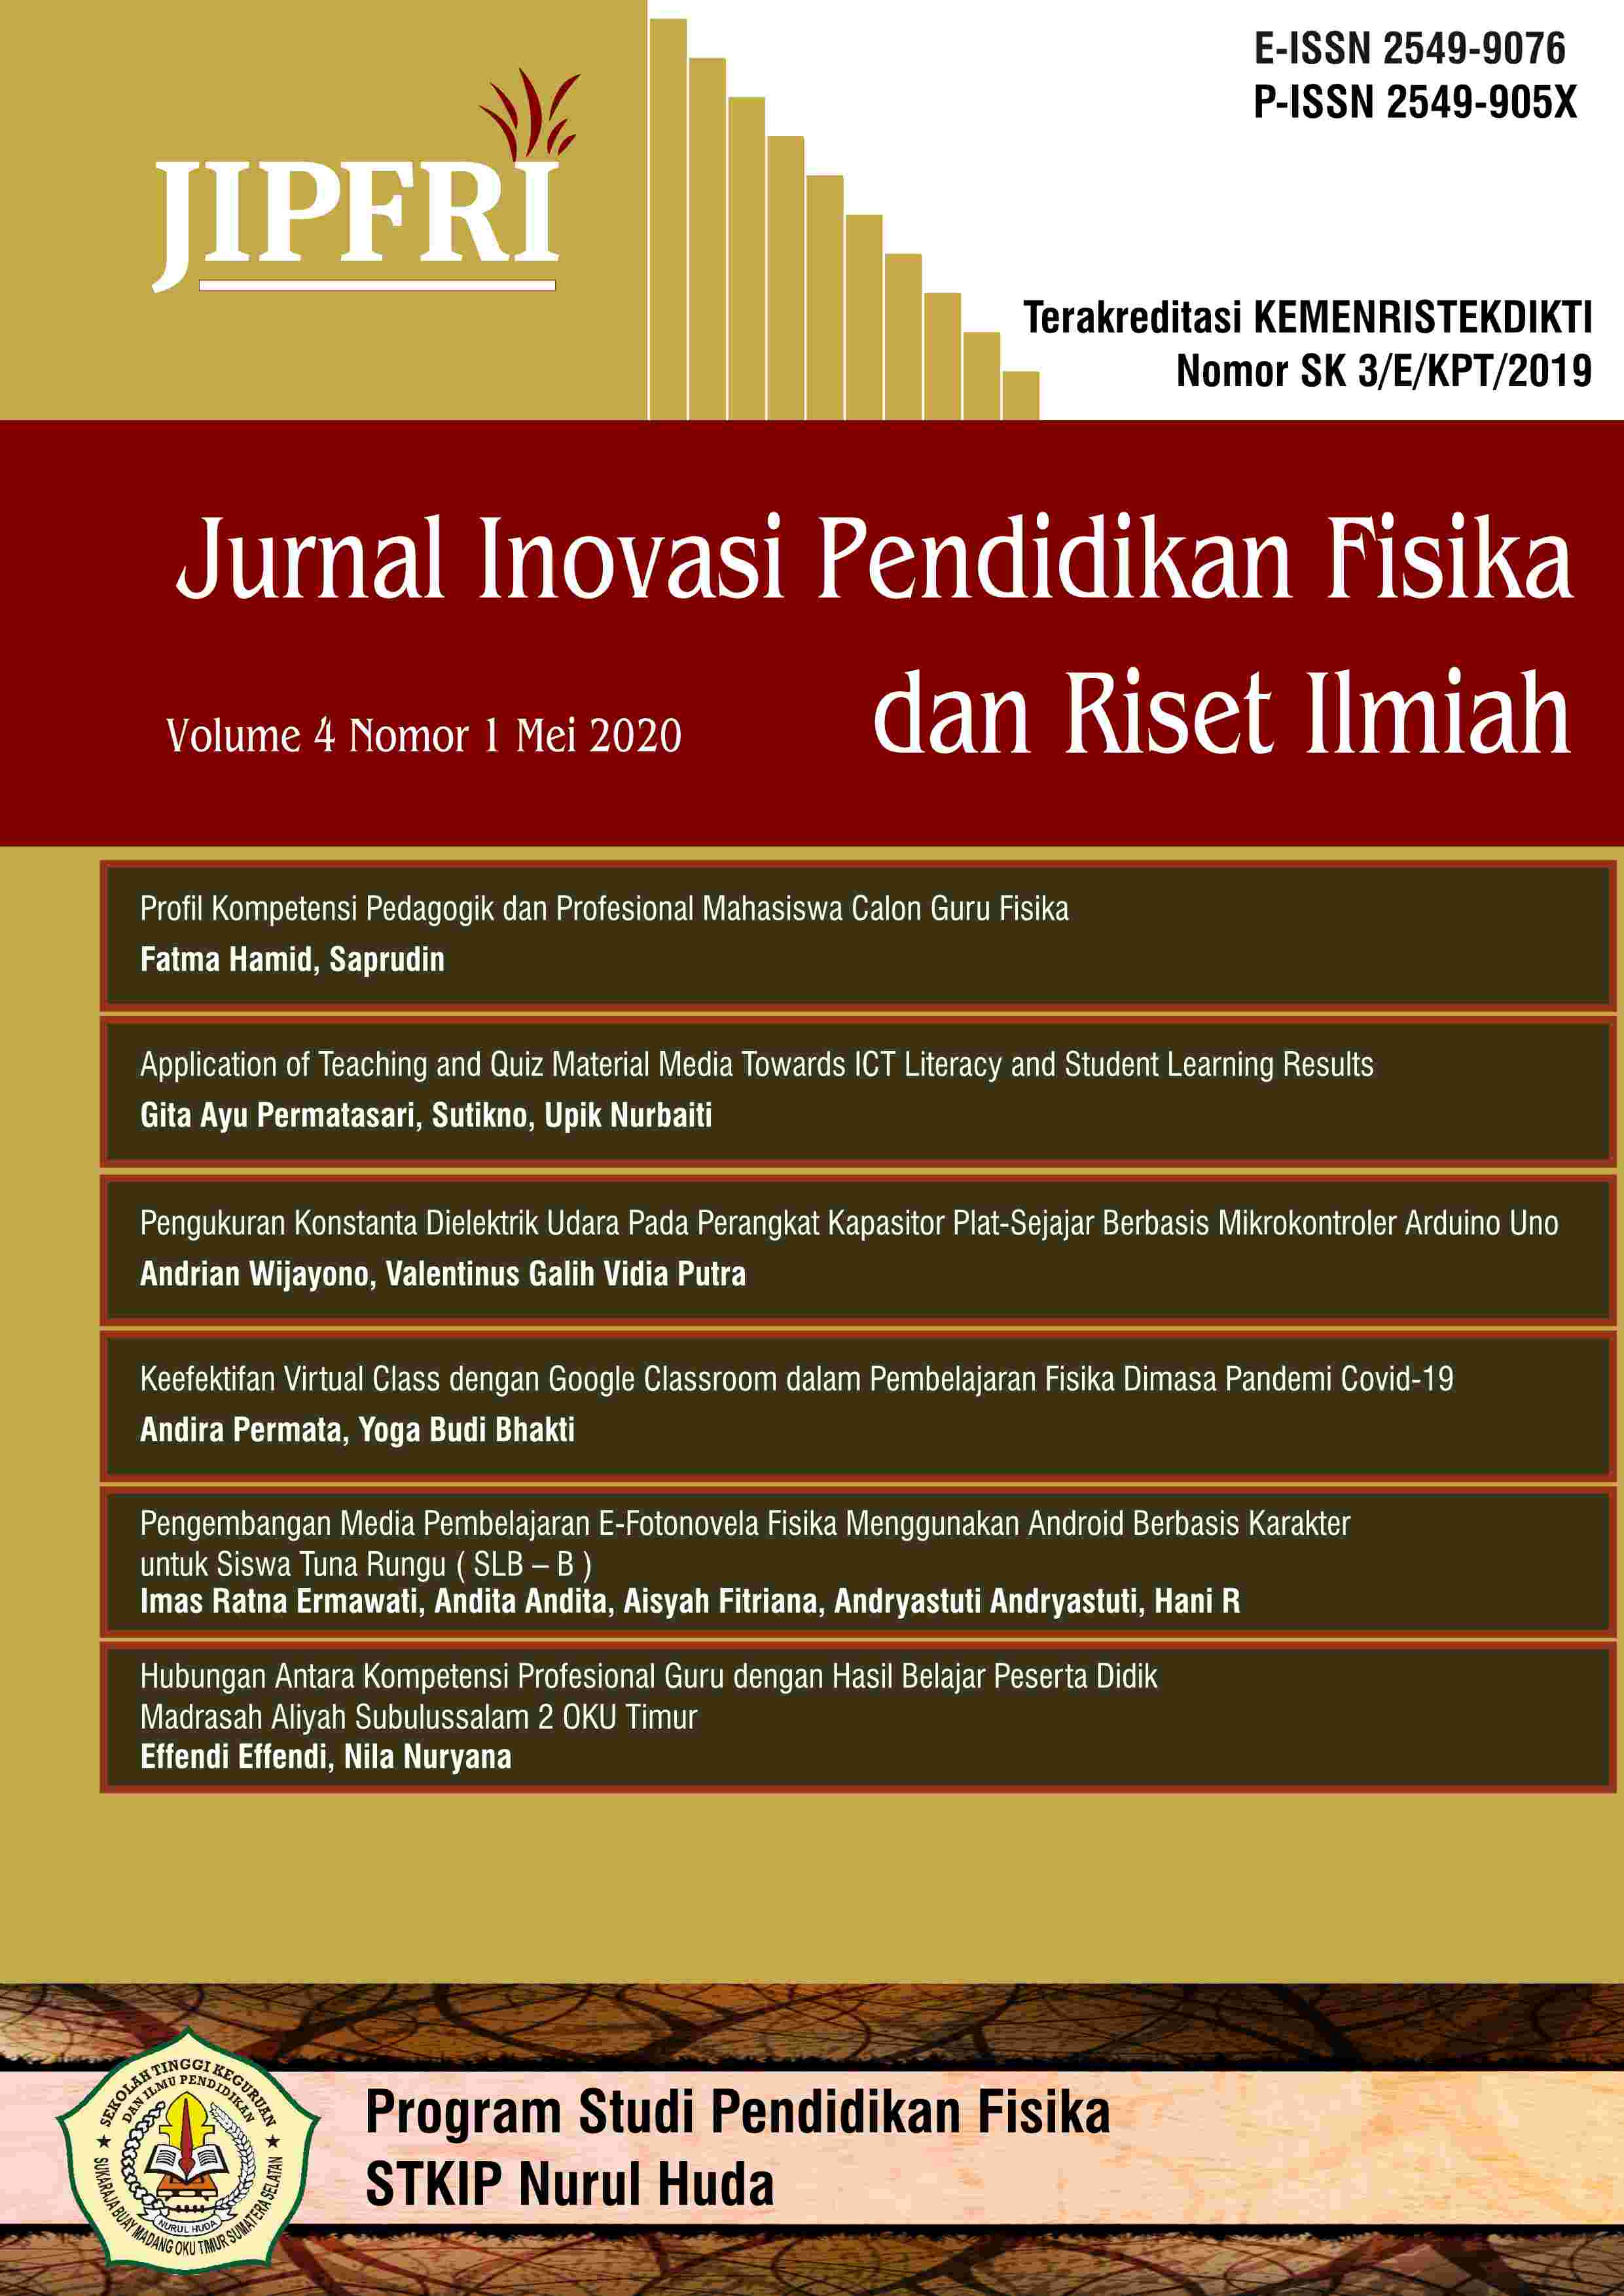 					View Vol. 4 No. 1 (2020): JIPFRI (Jurnal Inovasi Pendidikan Fisika dan Riset Ilmiah) - May 2020
				